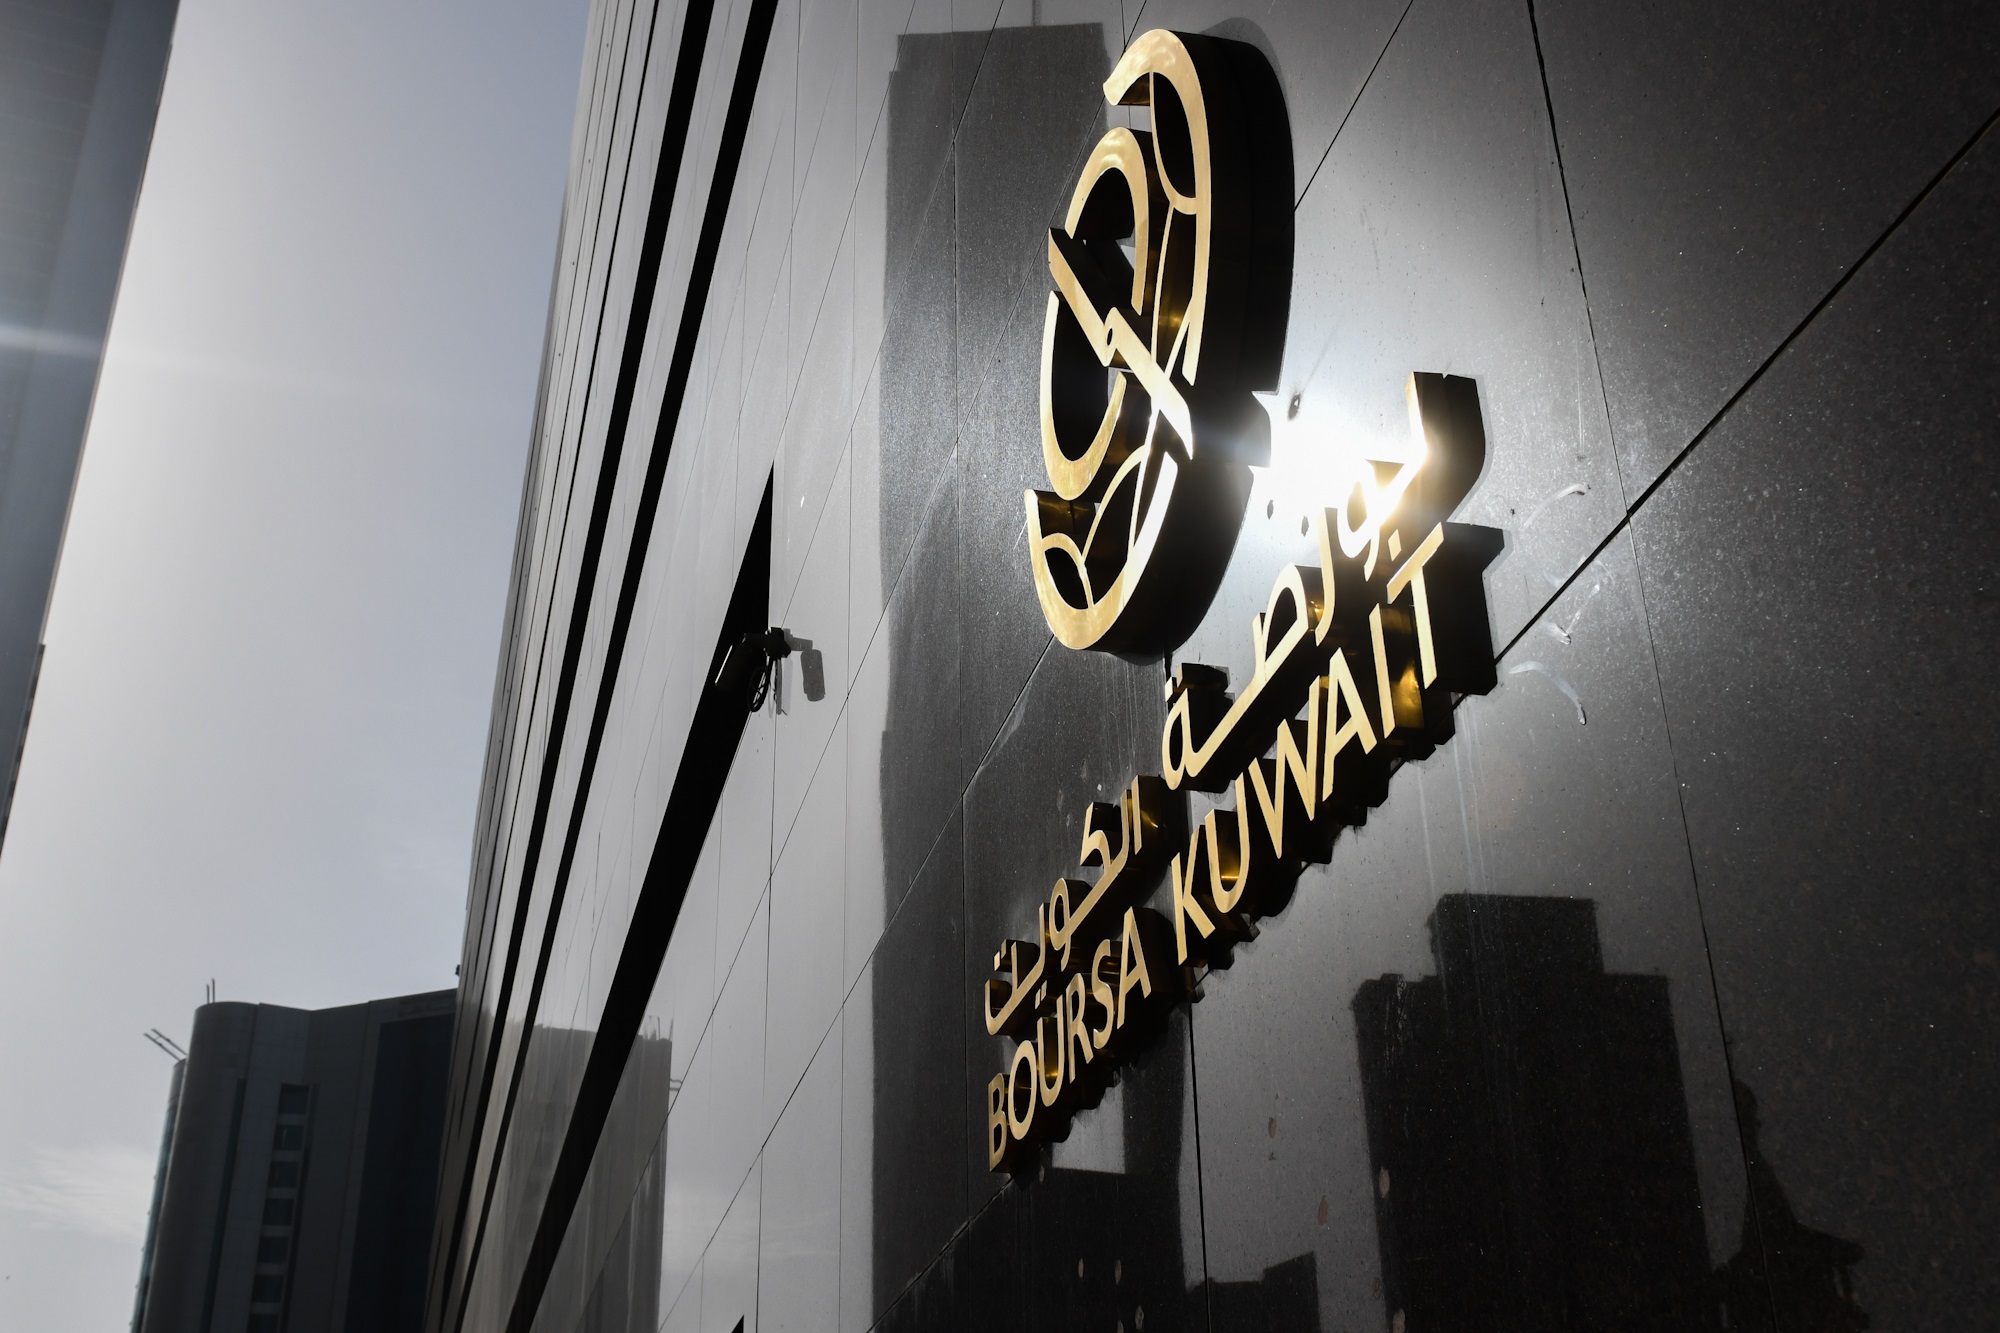 بورصة الكويت تغلق تعاملاتها على ارتفاع مؤشرها العام 13ر6 نقطة ليبلغ 01ر7456 بنسبة 08ر0 في المئة